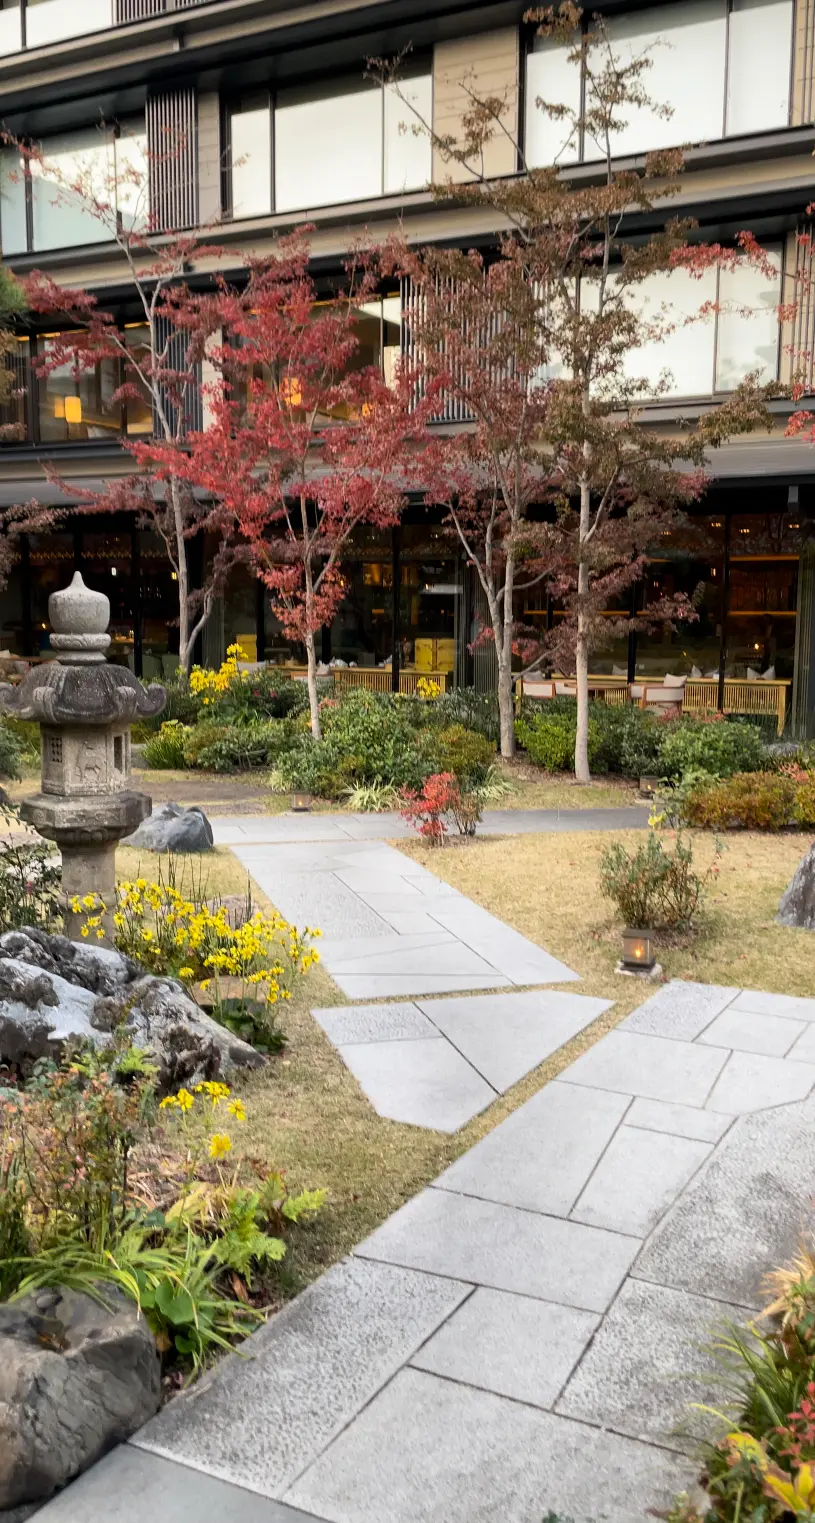 美しい日本庭園を眺めながら。京都で楽しむアフターヌーンティー_1_9-2